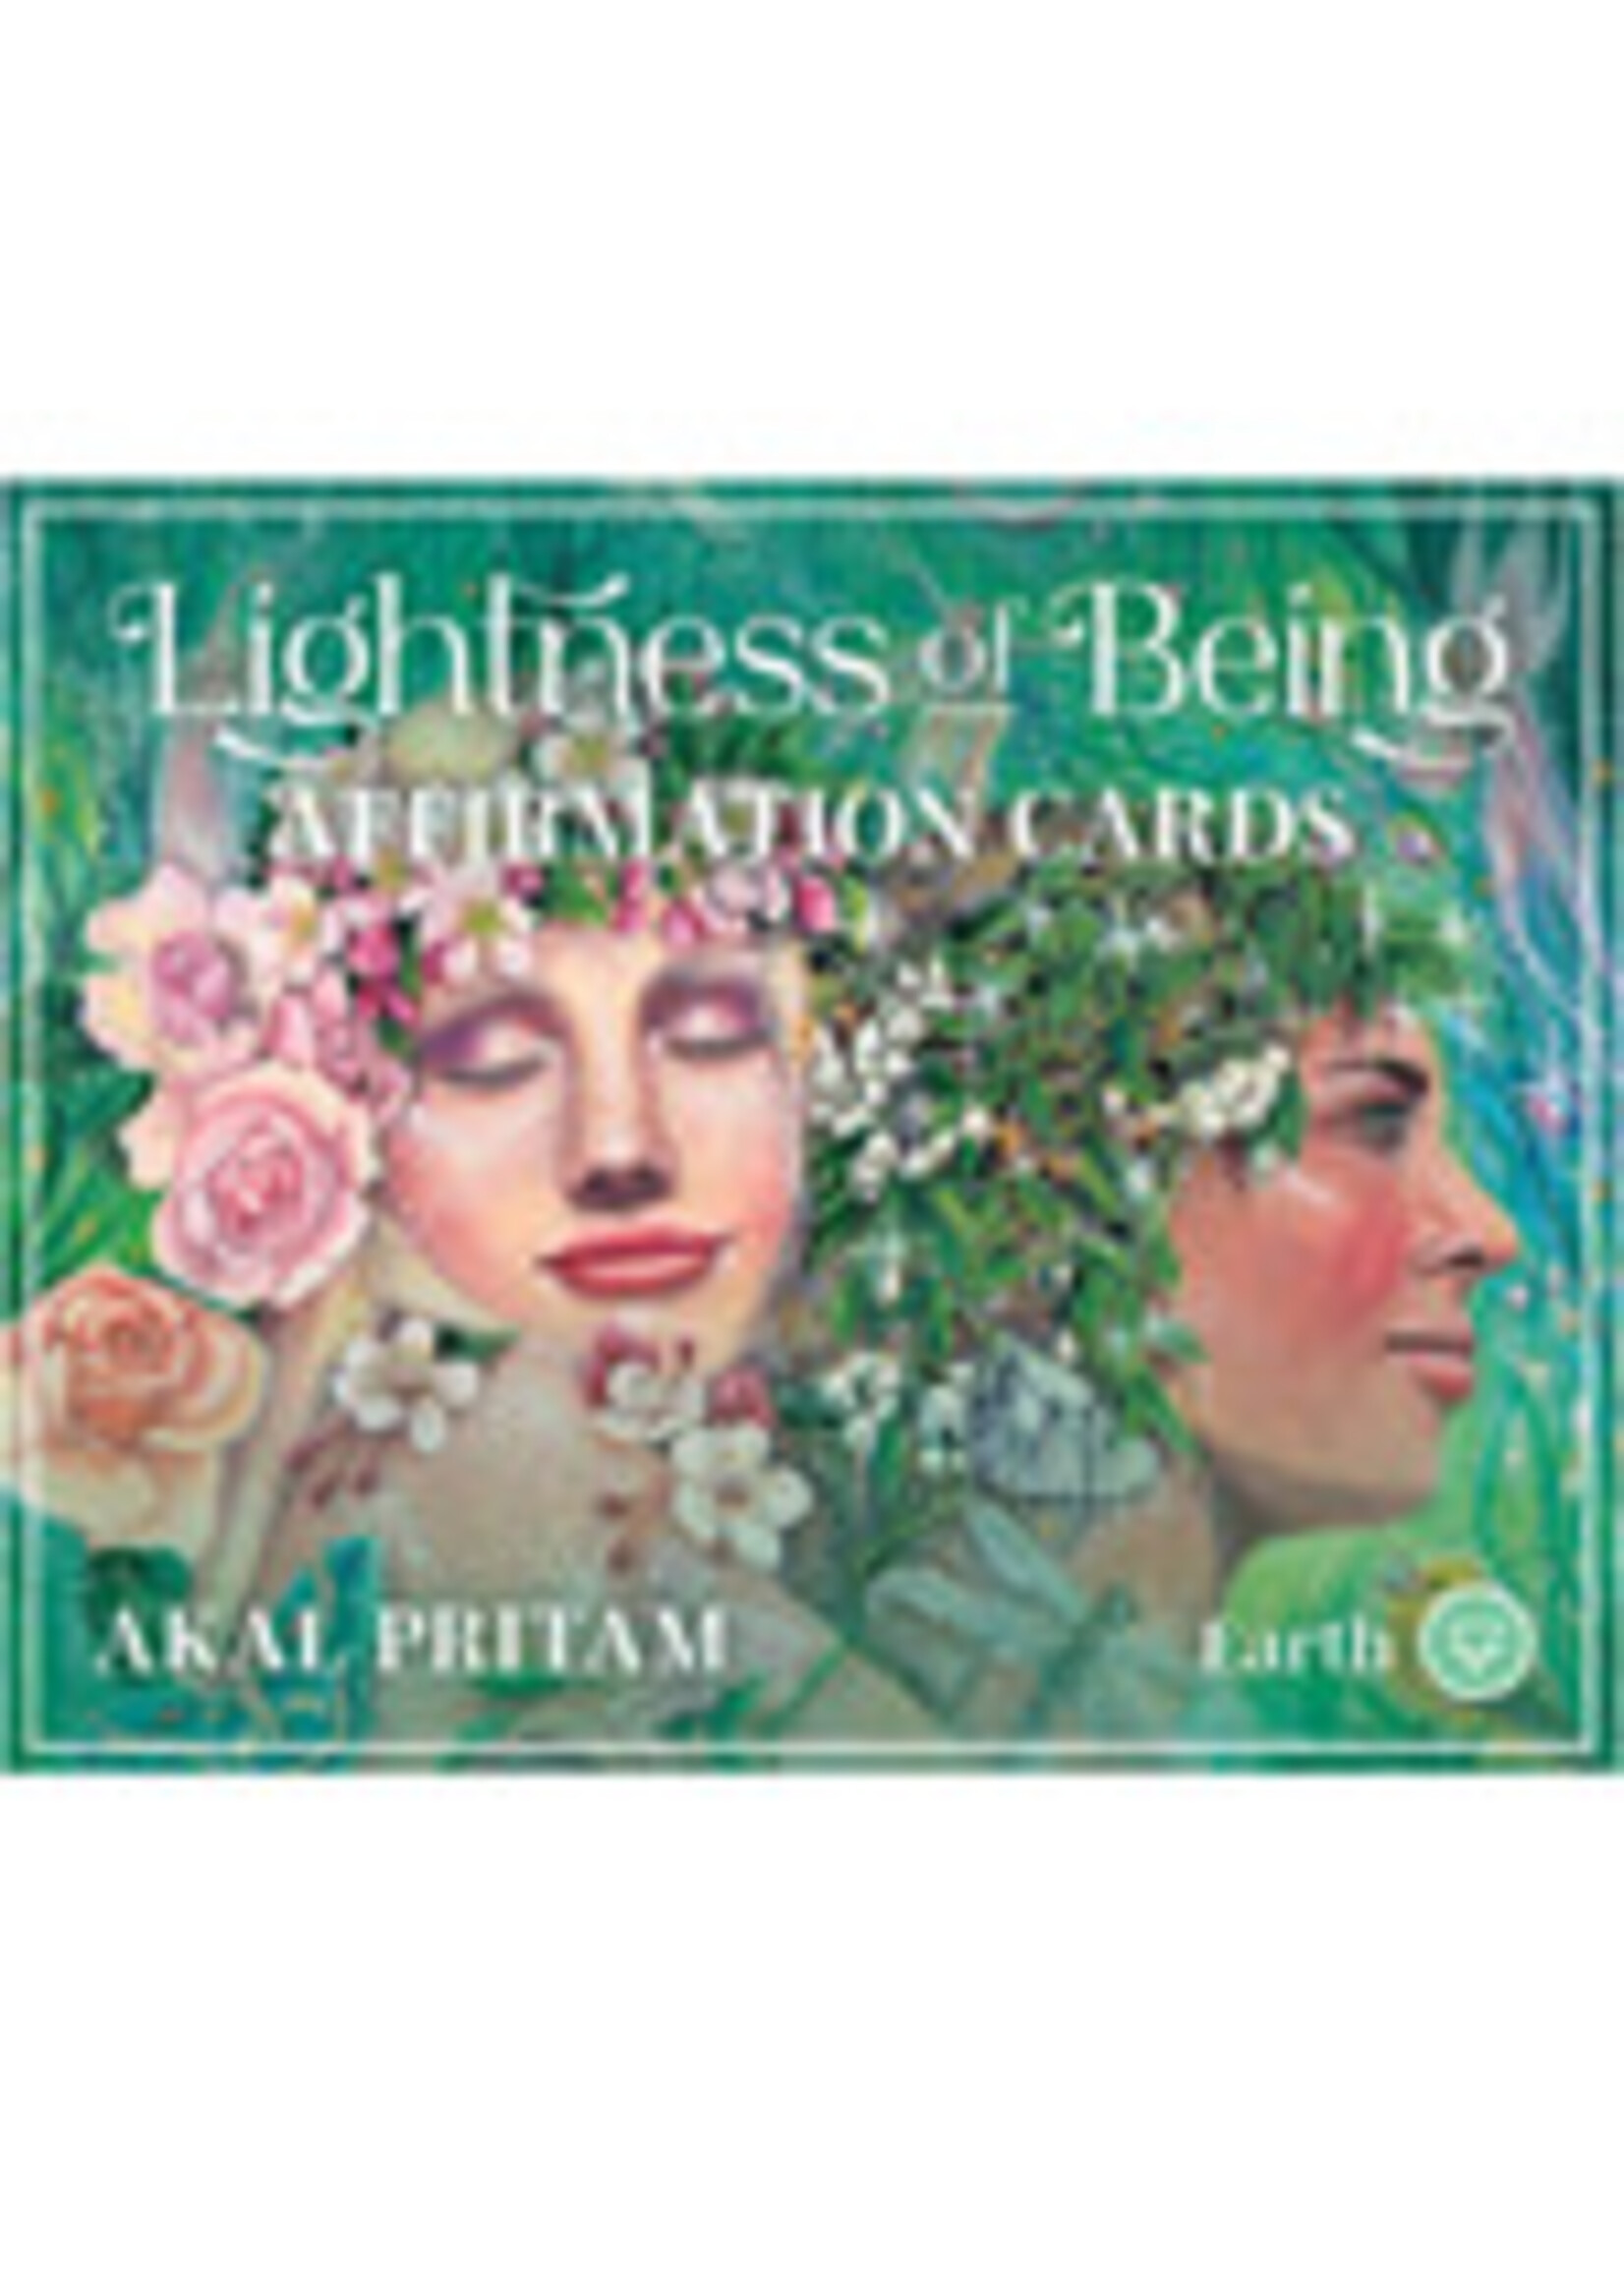 Lightness of Being Affirmation Cards